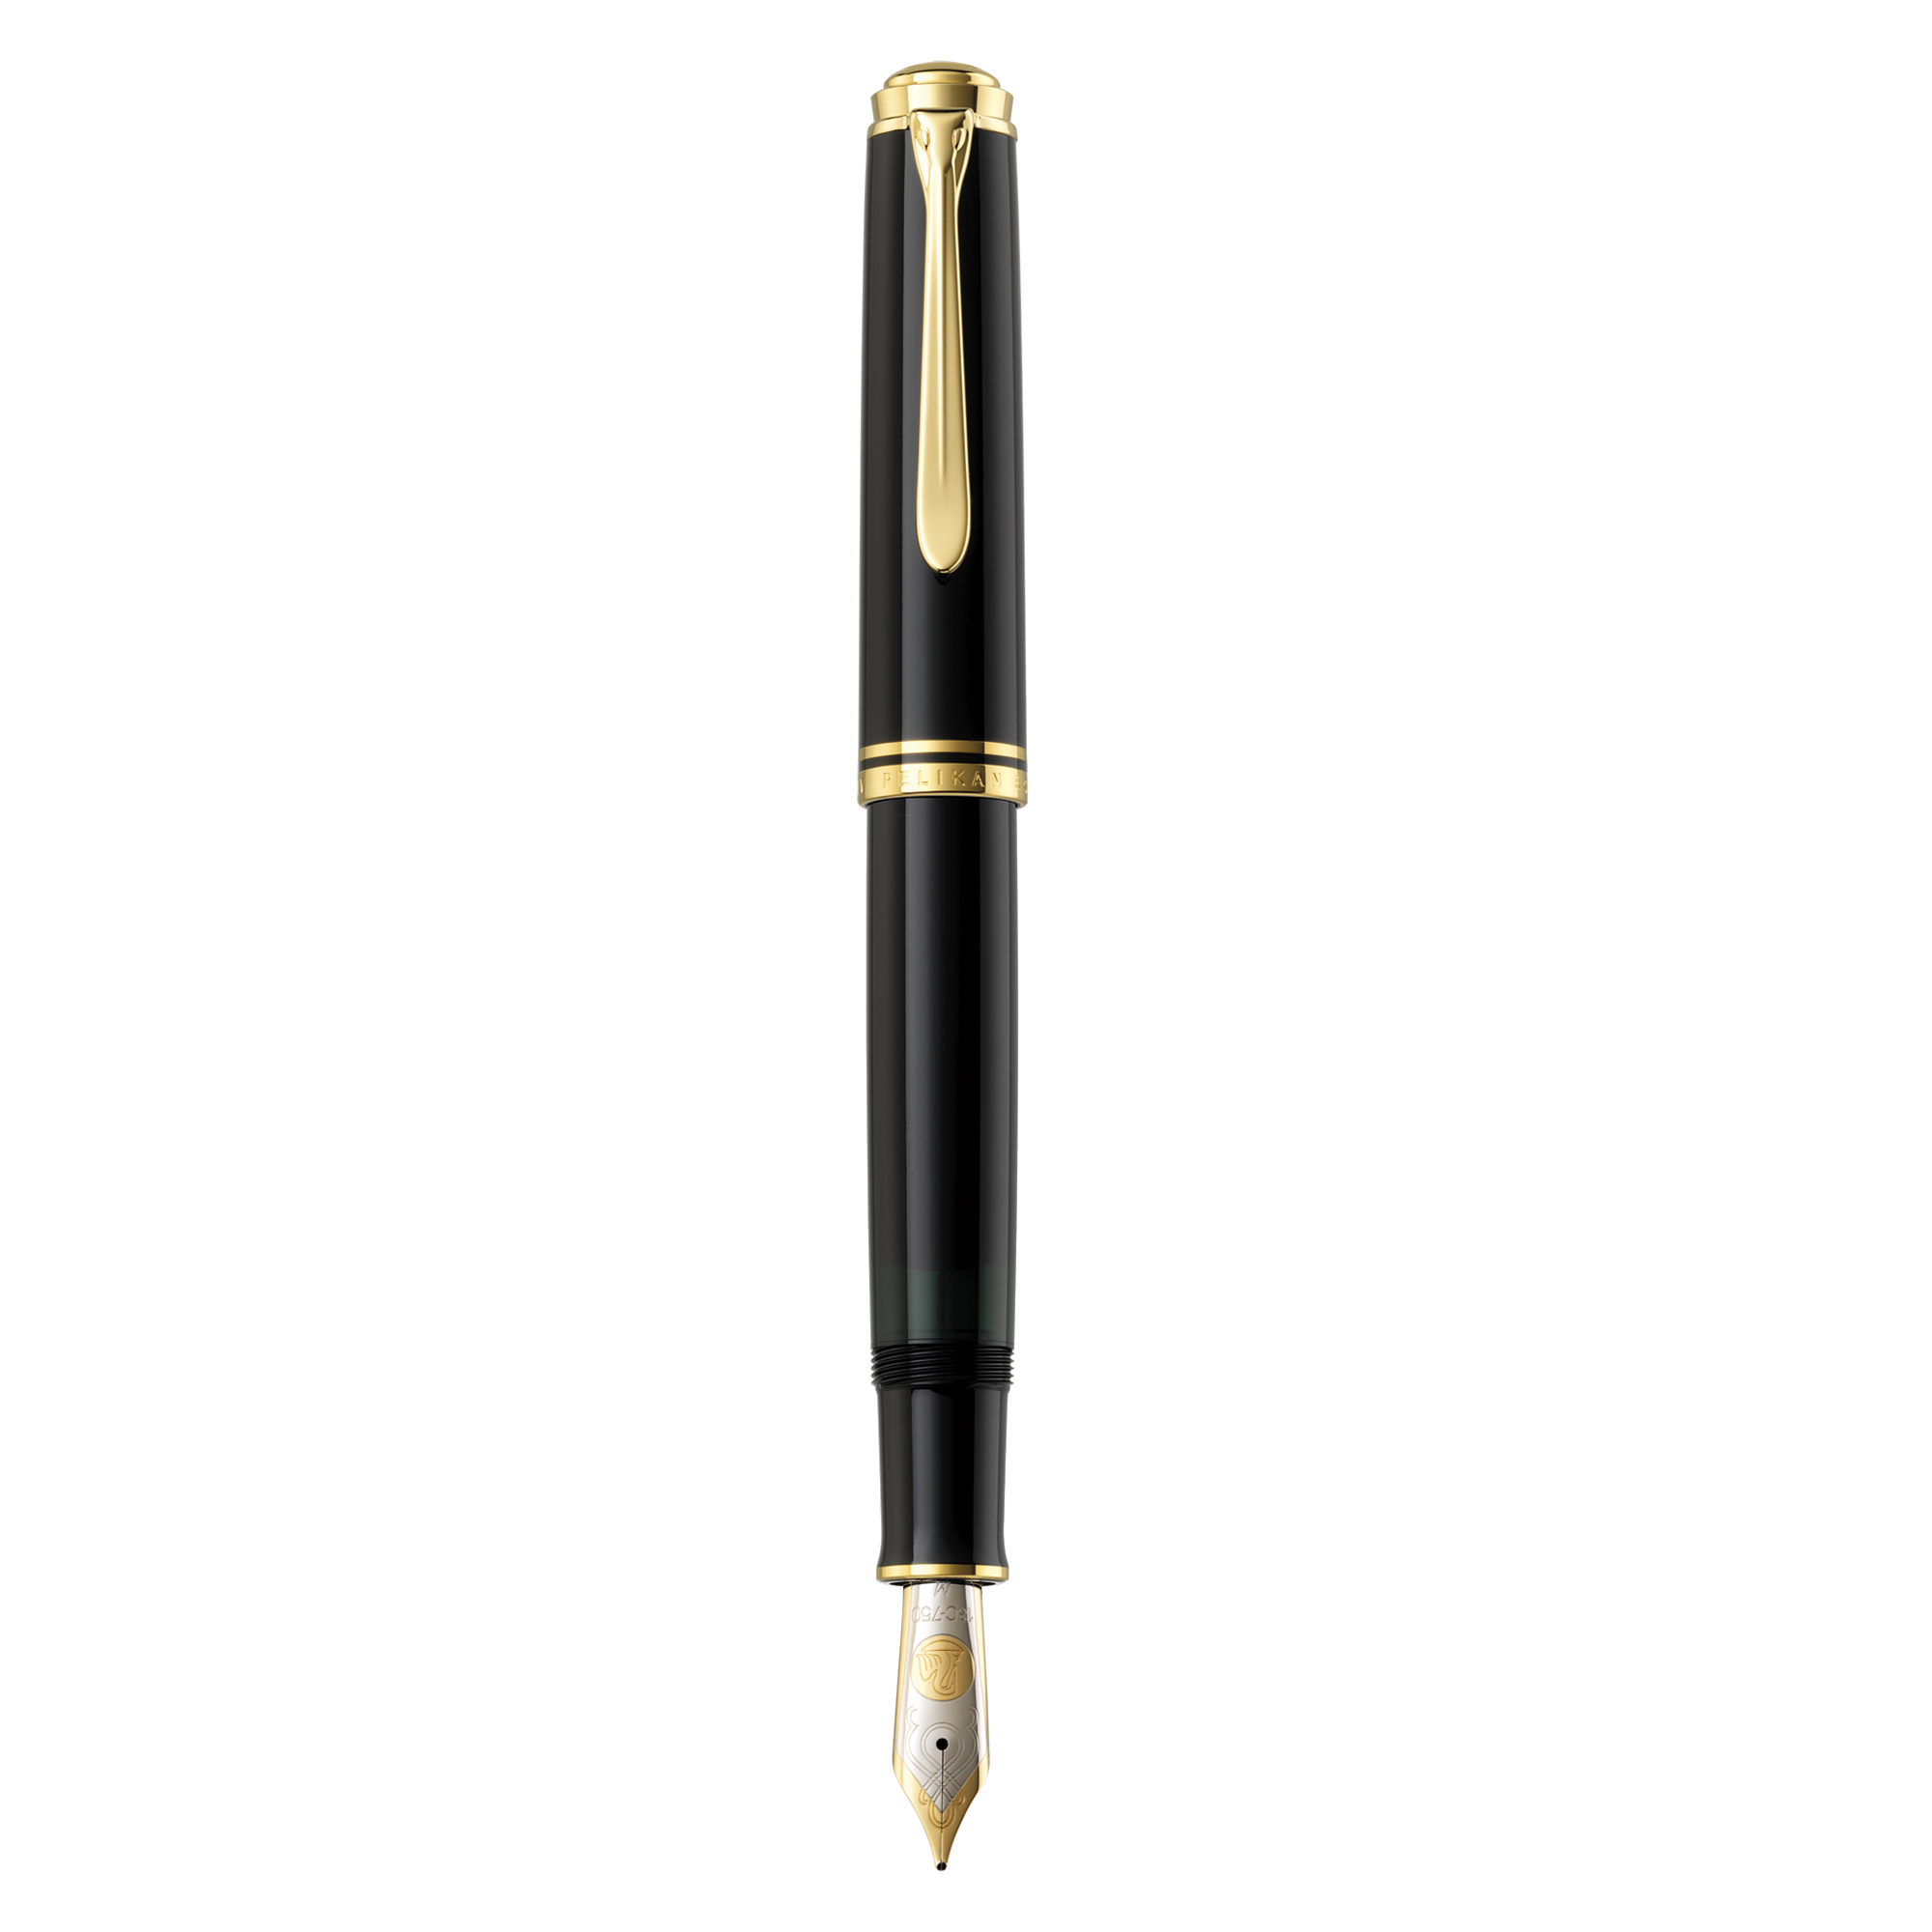 Pelikan Souverän M1000 Black Fountain Pen - Pencraft the boutique